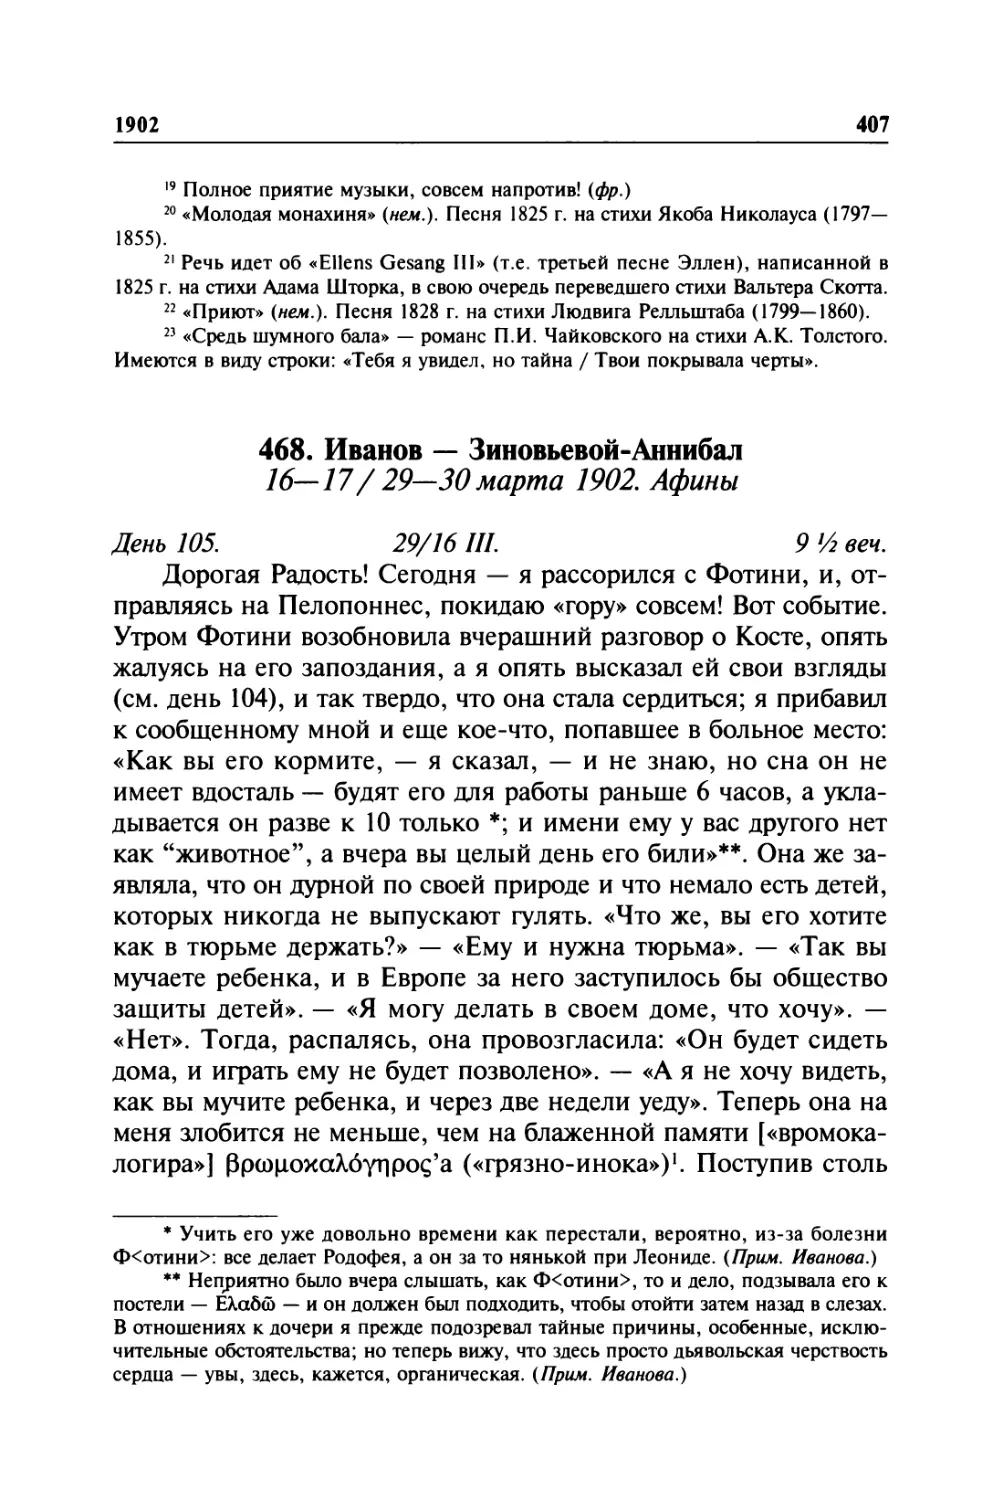 468. Иванов — Зиновьевой-Аннибал. 16—17/29—30марта 1902. Афины